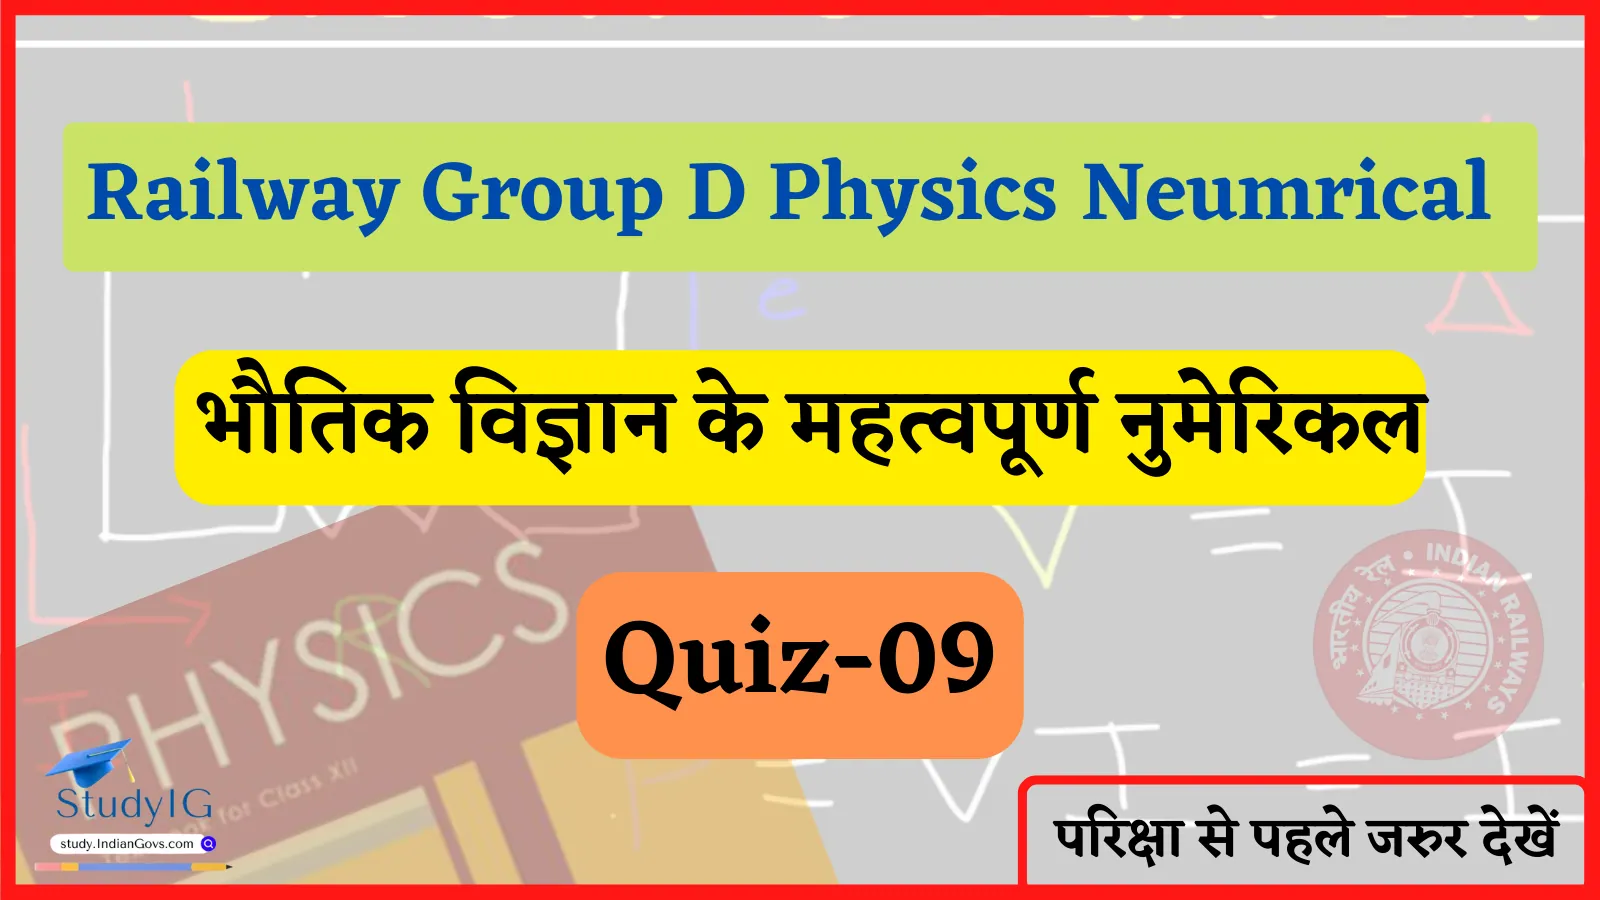 Railway Group D Physics Numerical Quiz- 09